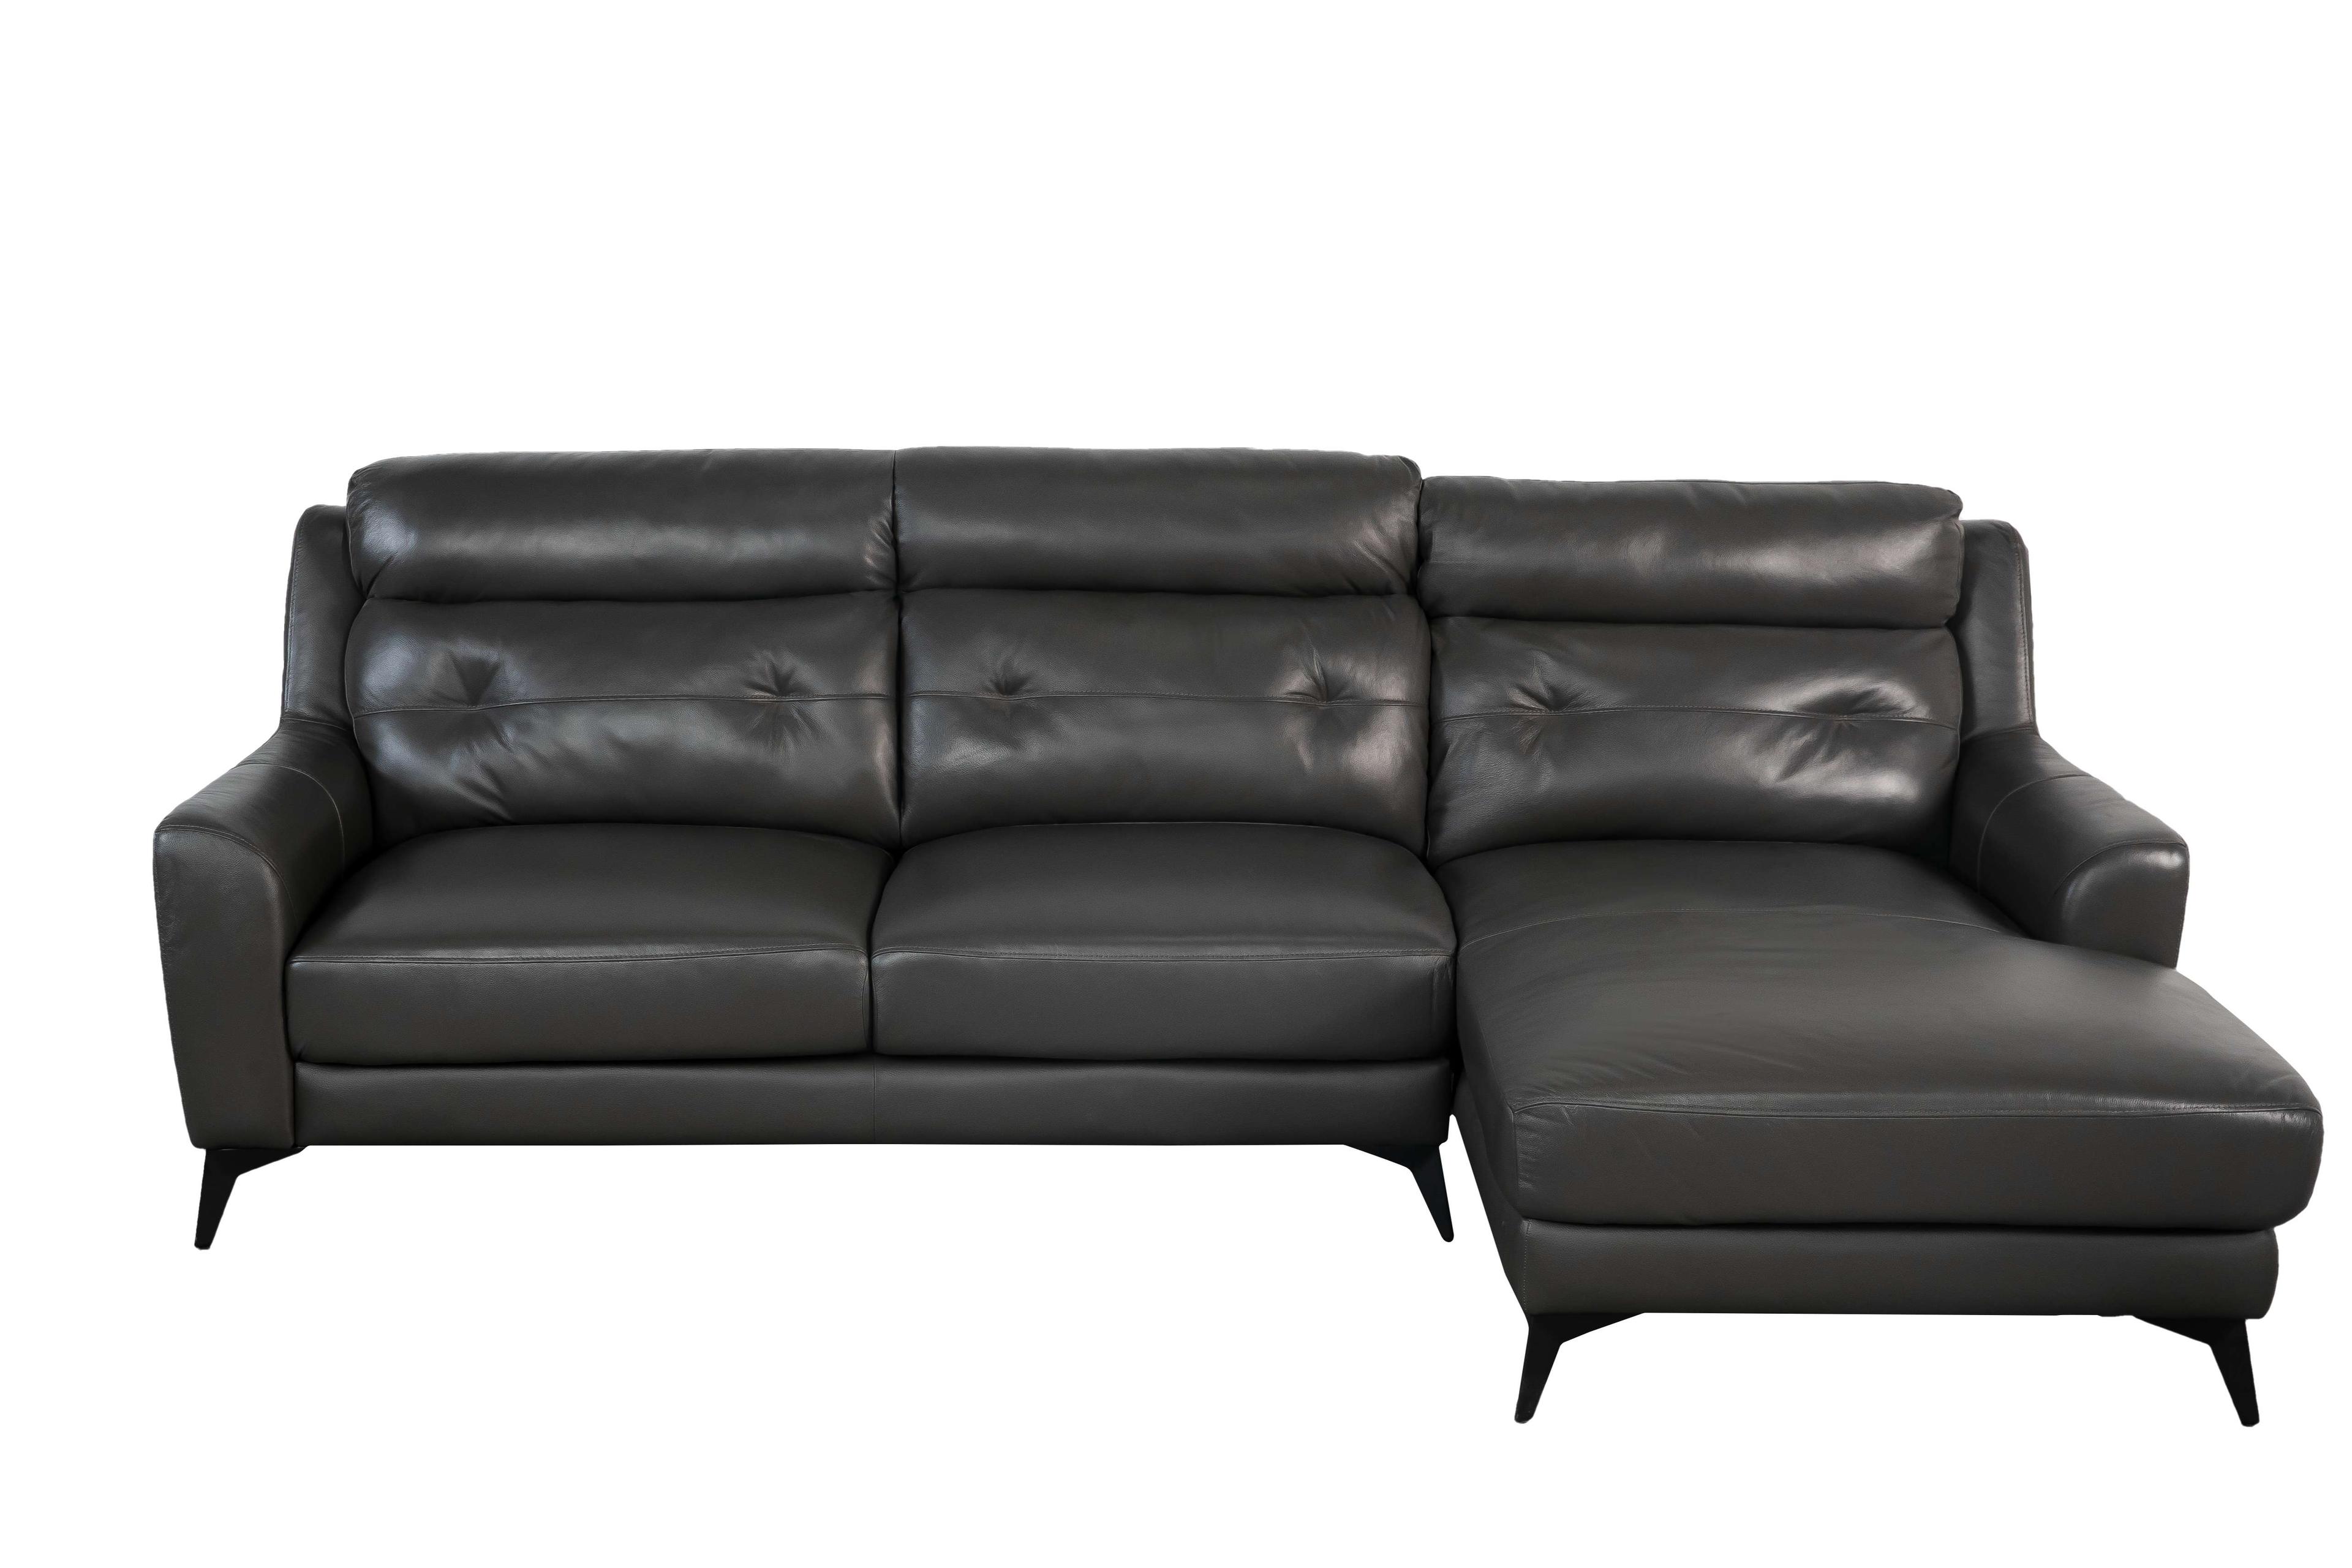 Sofa góc trái Sofaland Hilbert Da bò thật tiếp xúc 2540 x 1500 x 930